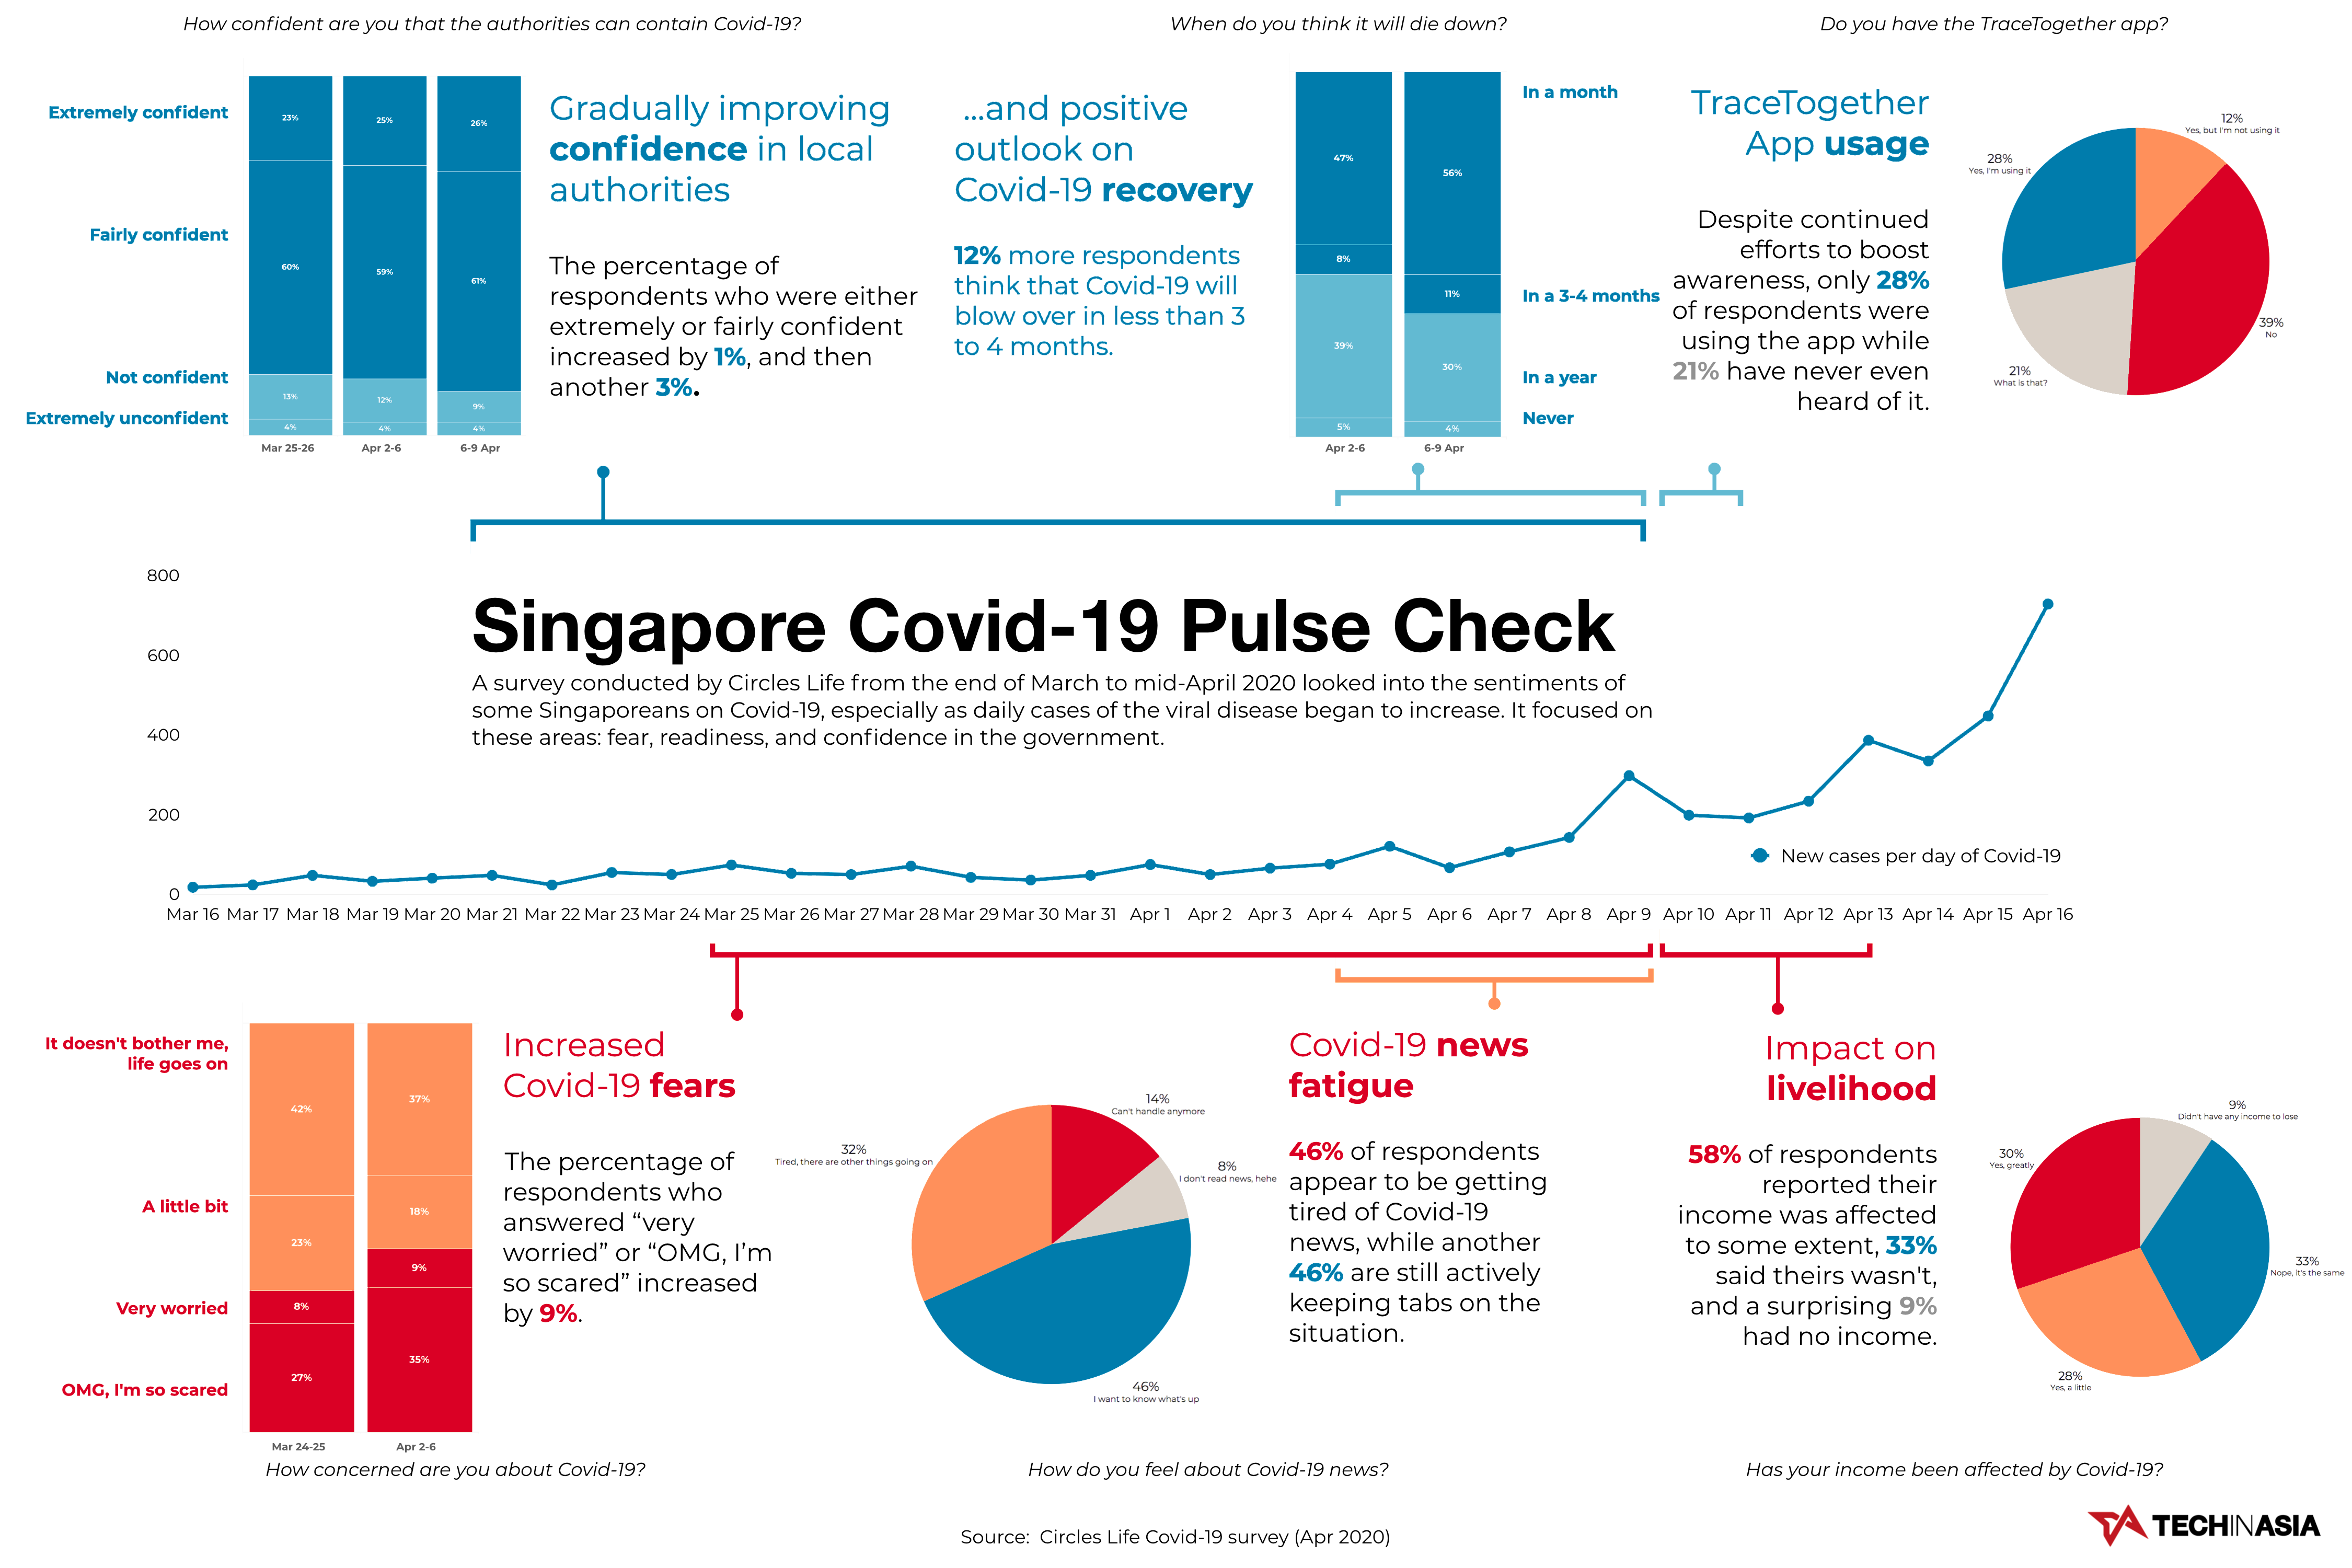 Singapore Covid-19 pulse check